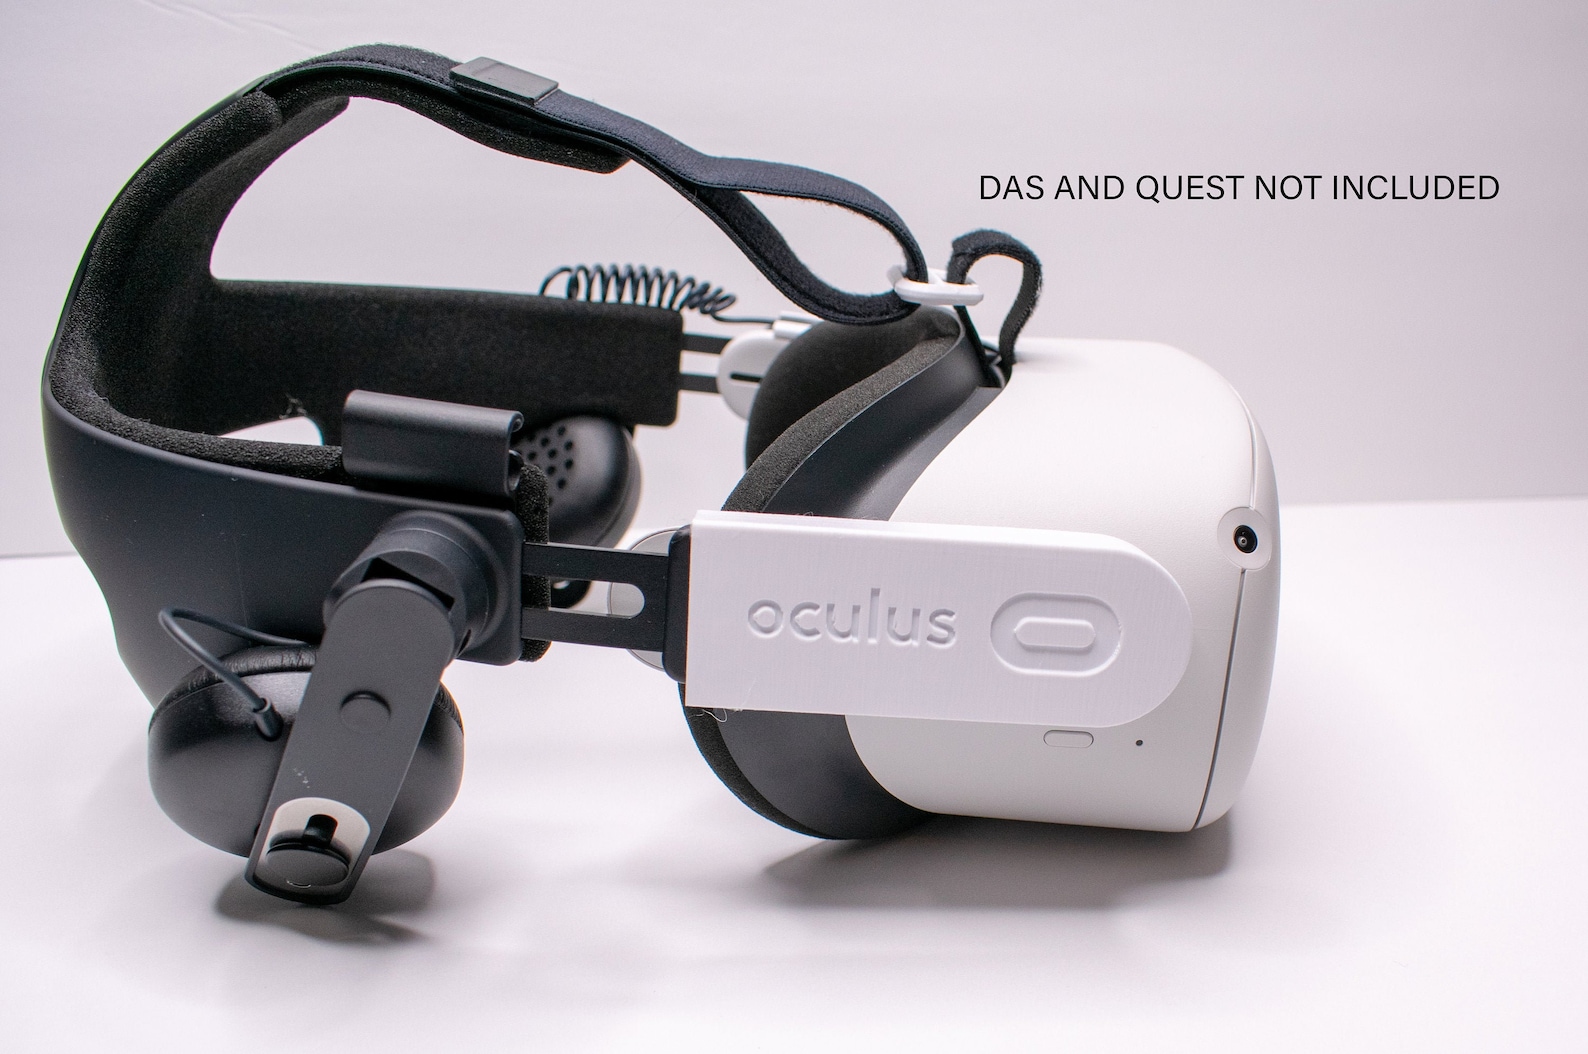 Oculus quest аксессуары. Vive или Oculus. Аналоги Oculus Quest 2. Oqulus Quest 3 вилка. Док станция Oculus Quest 3.